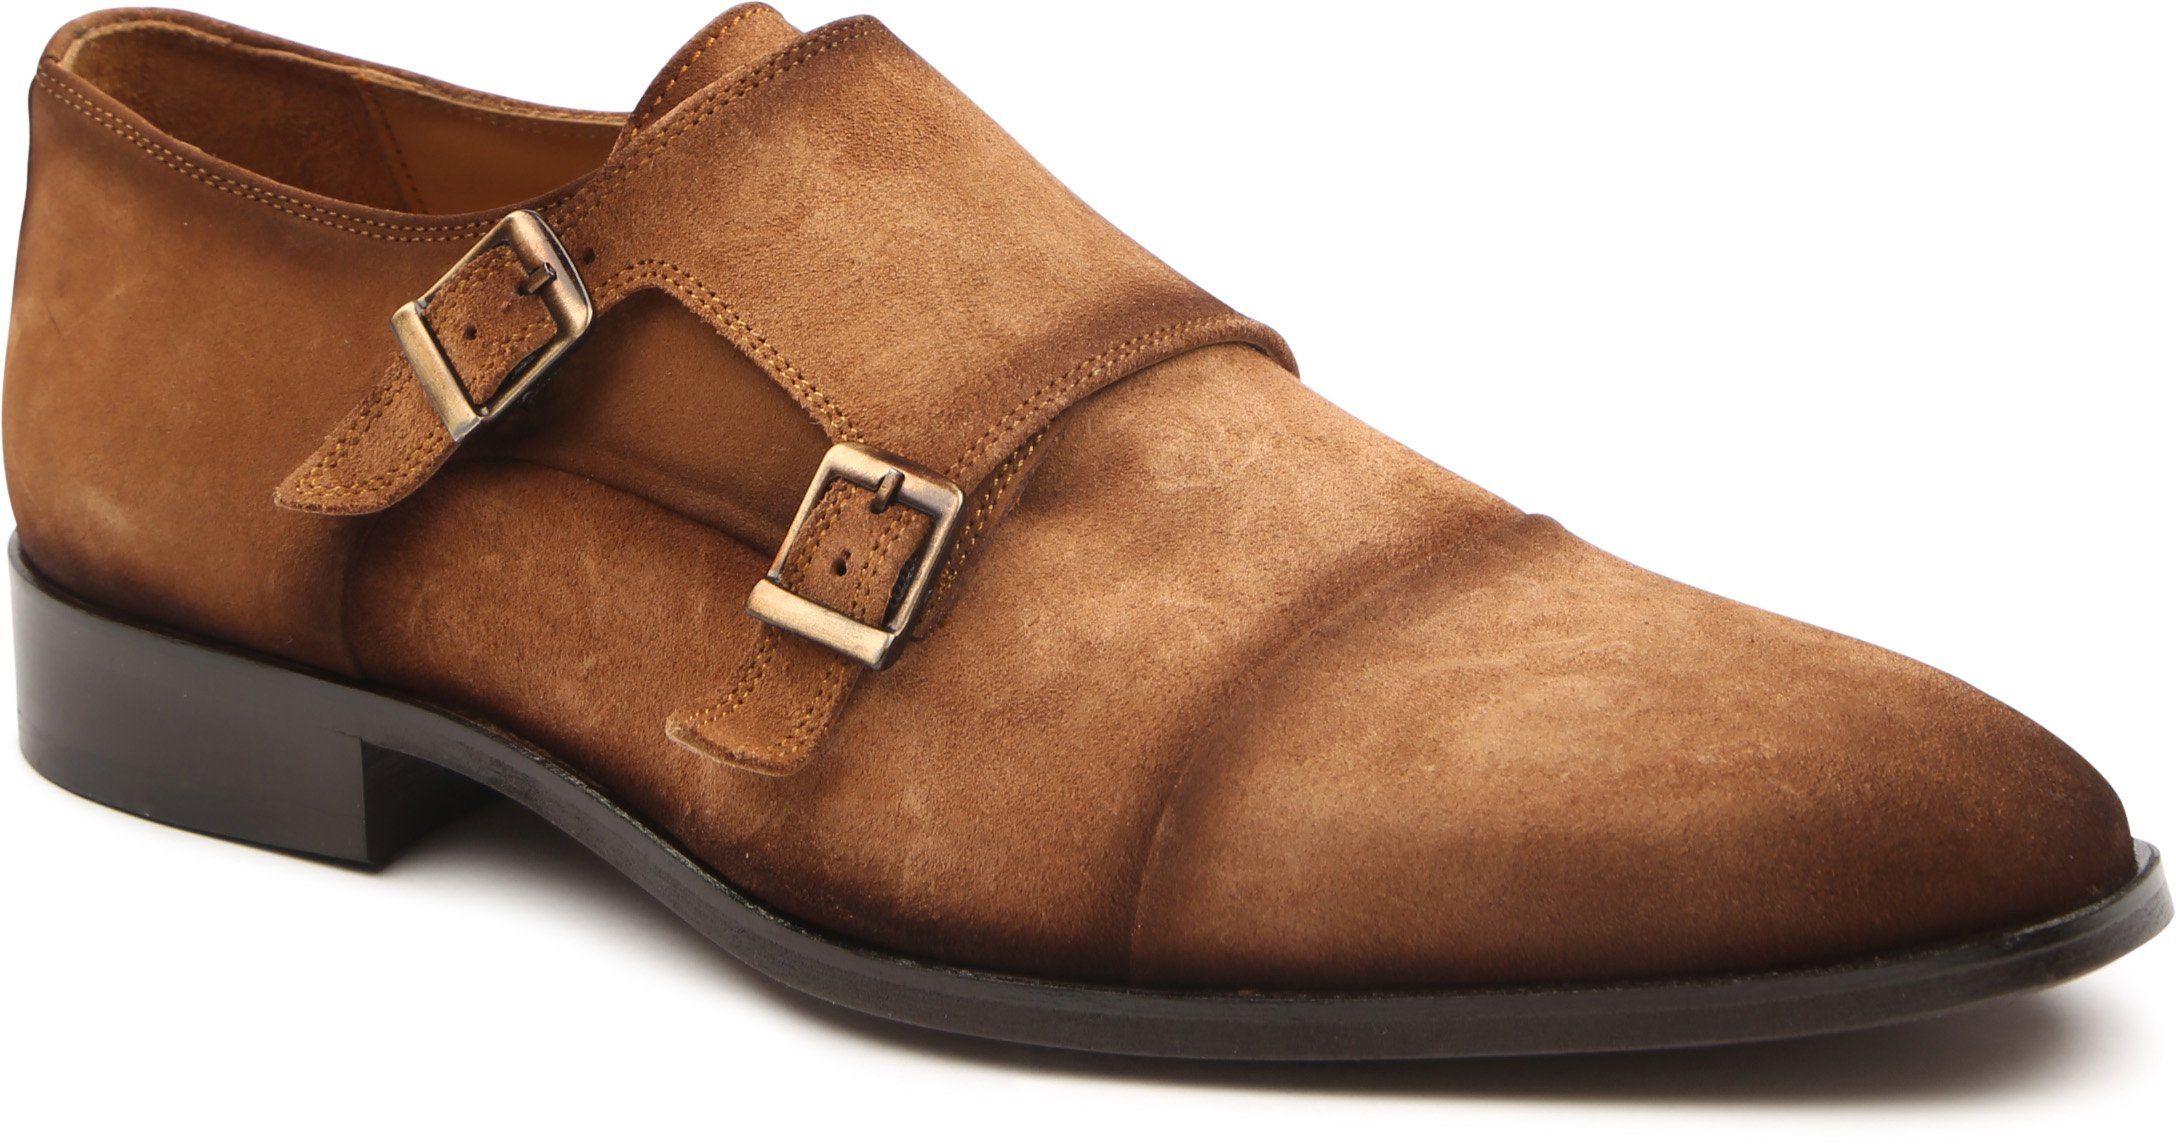 Melik Derby Sugero shoe Cognac Brown size 9.5 product